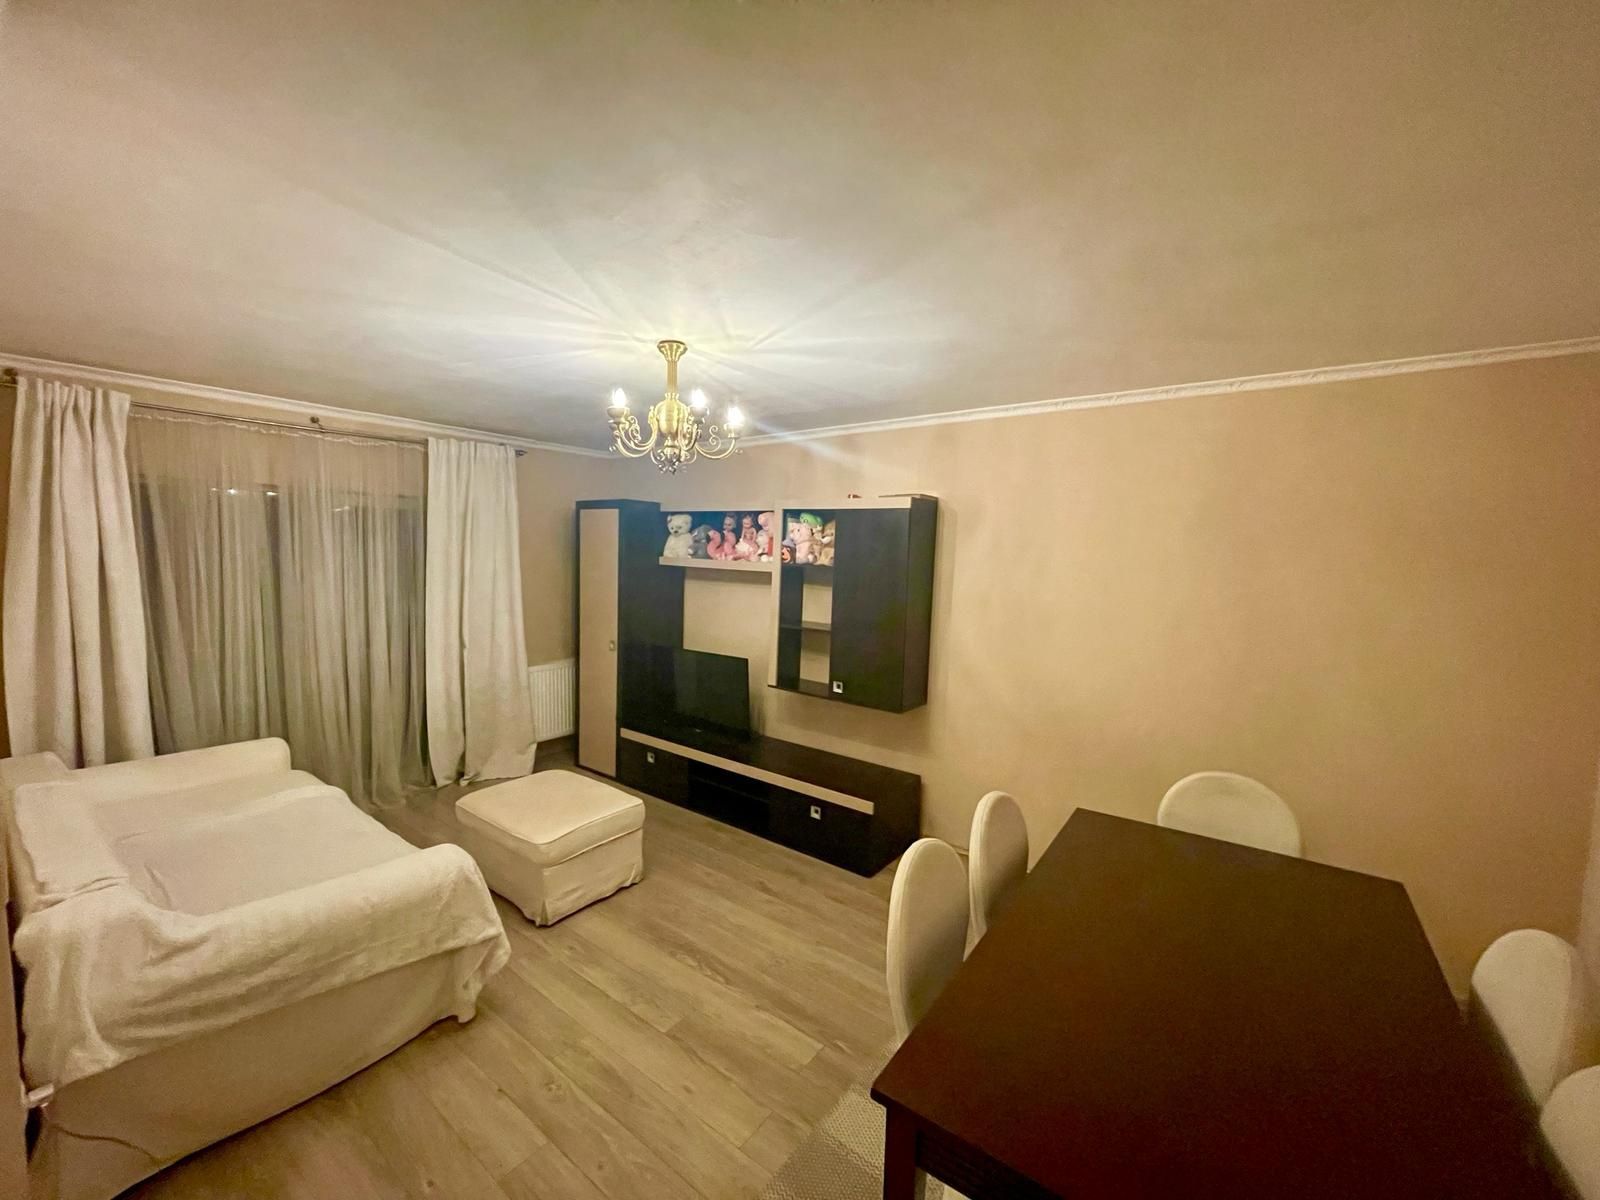 Vând apartament 51 mp - mobilat - strada Eroilor - Profi